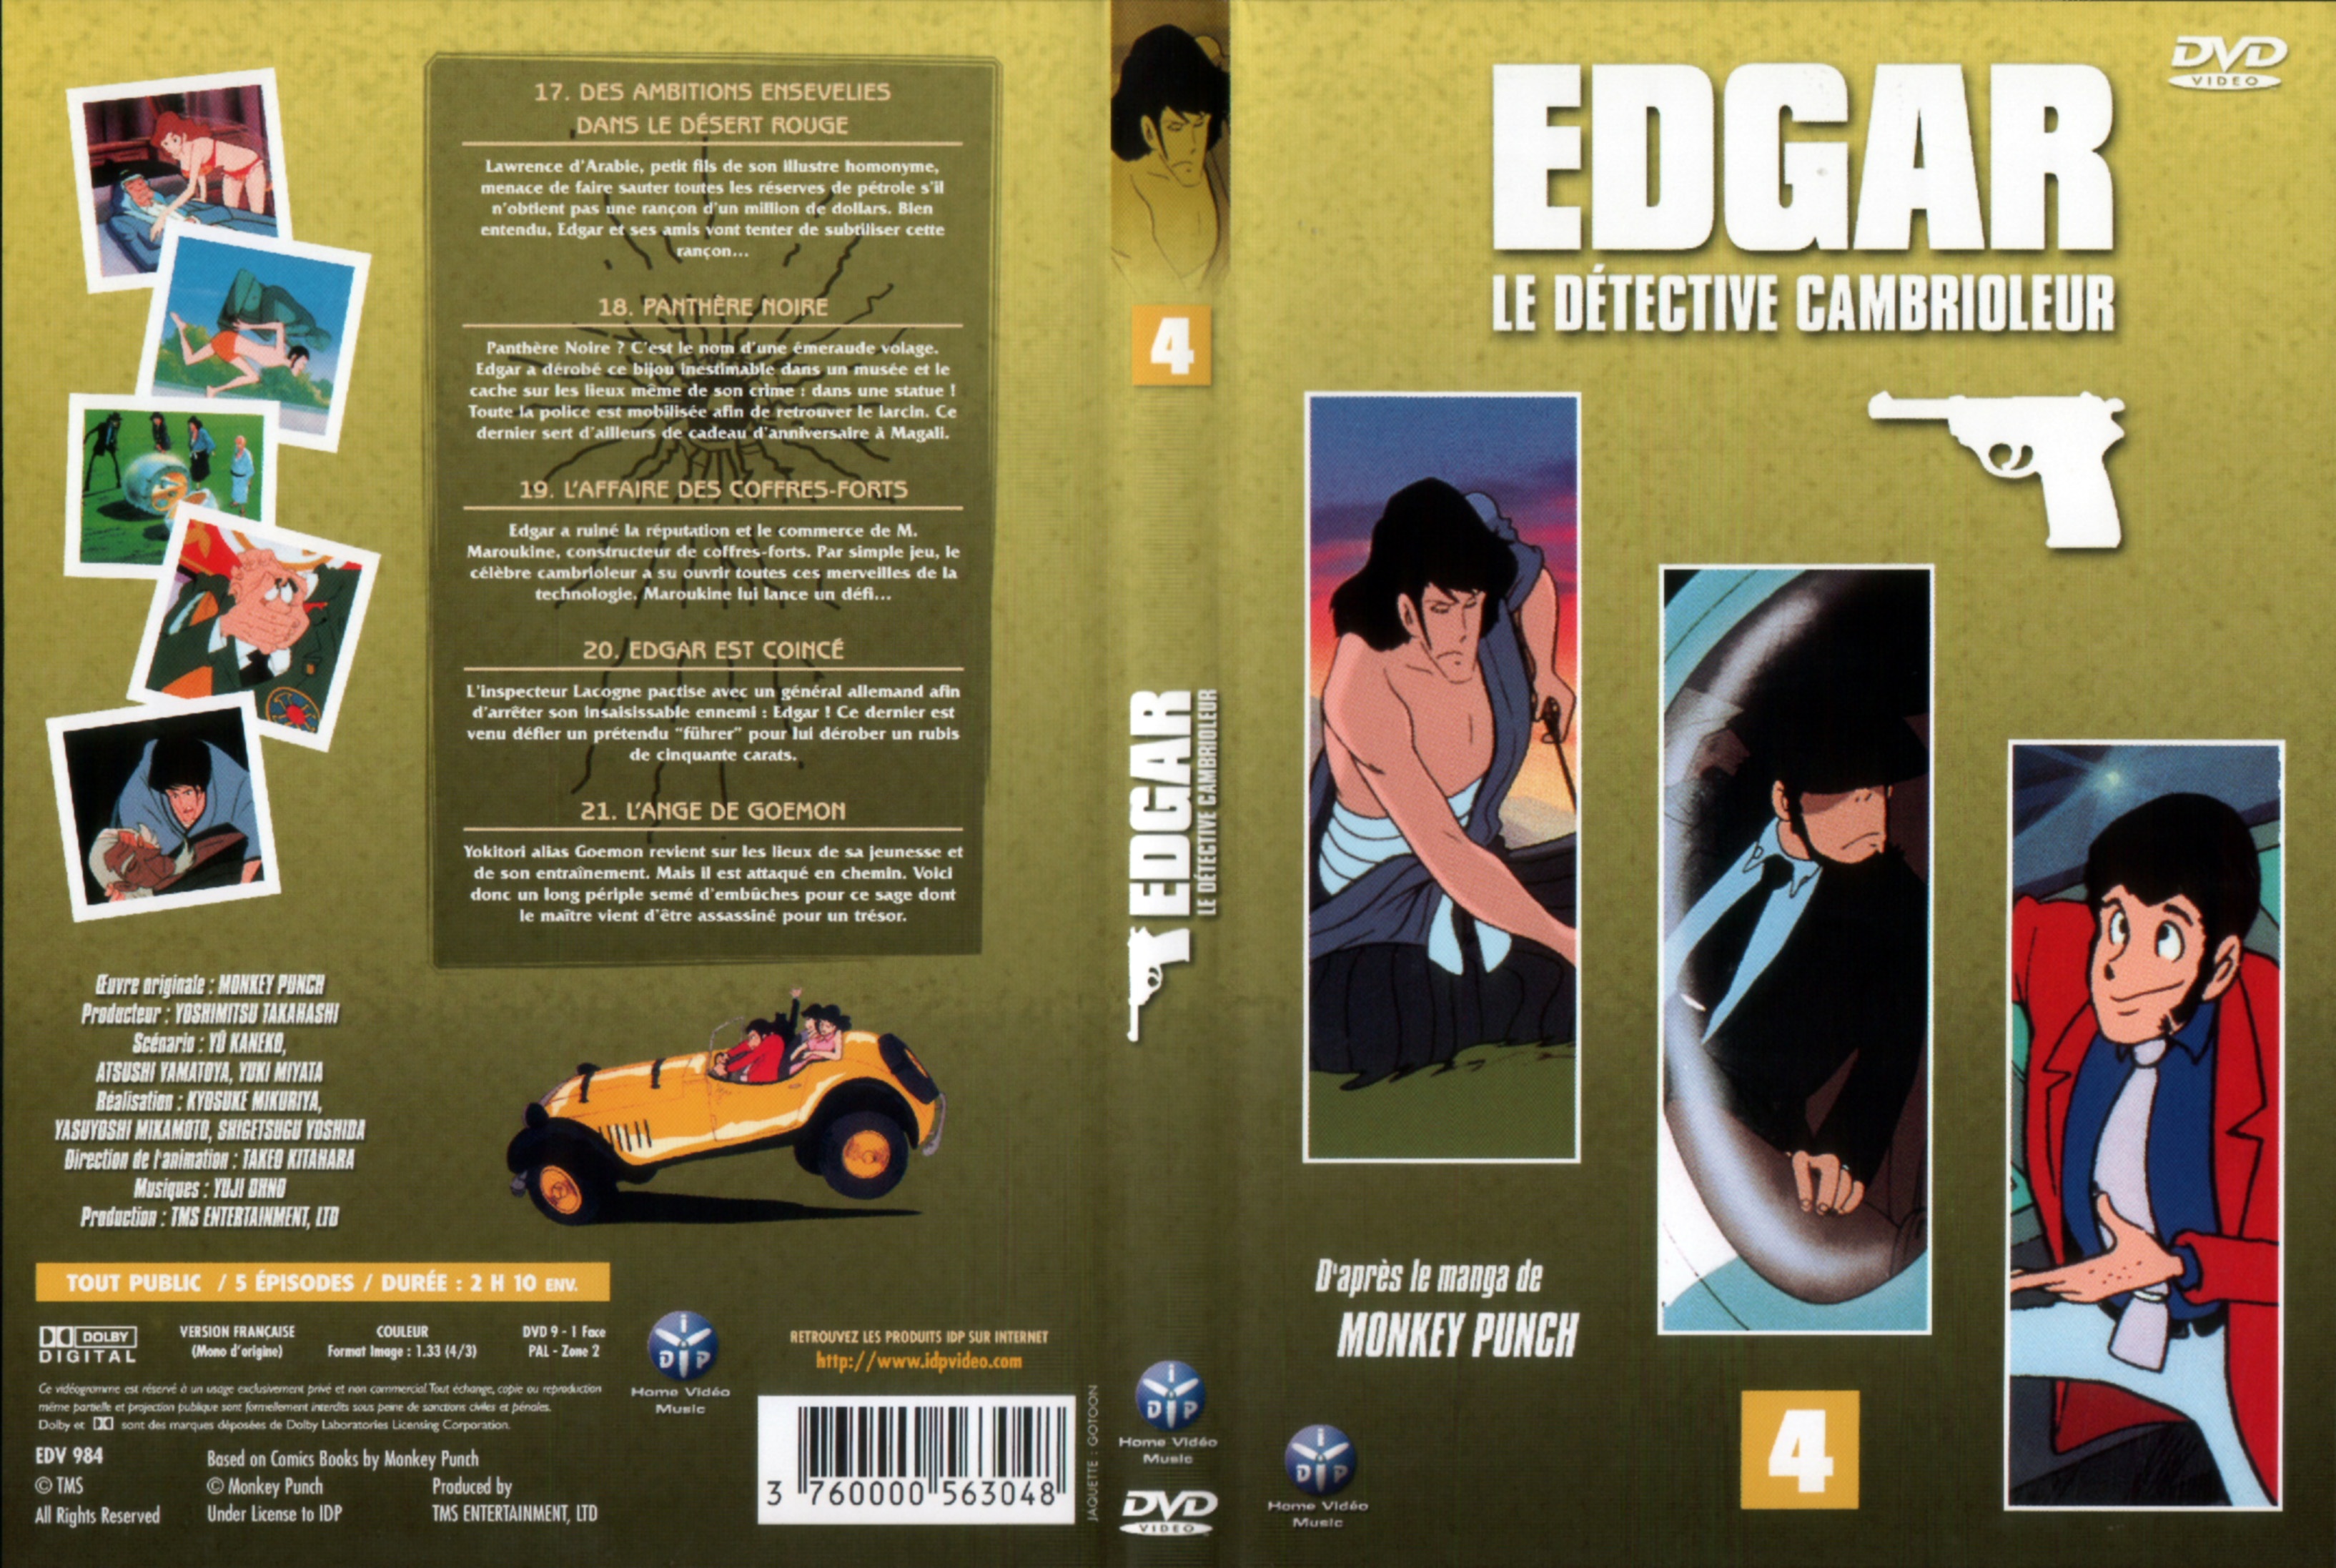 Jaquette DVD Edgar le detective cambrioleur DVD 04